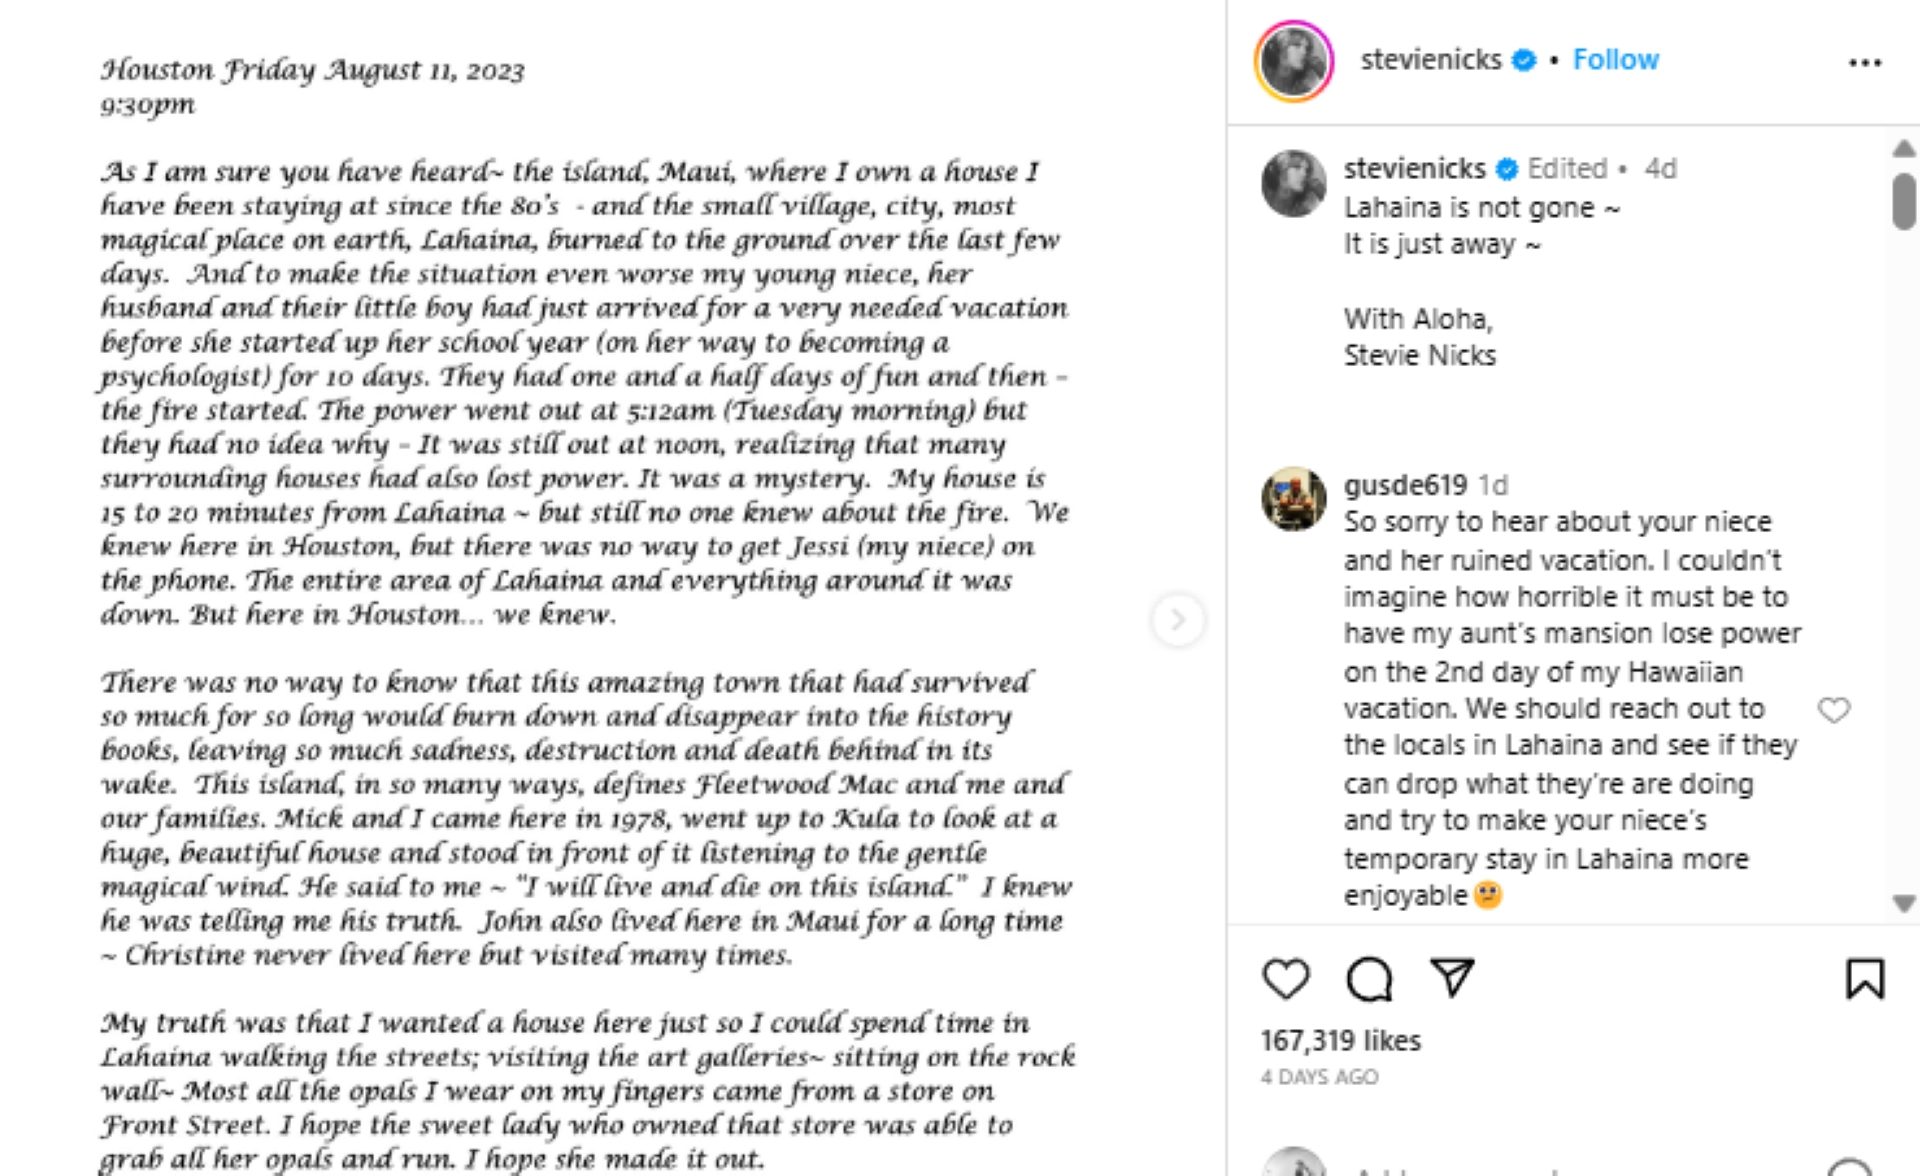 Stevie Nicks also got flack for her Instagram post on the fires